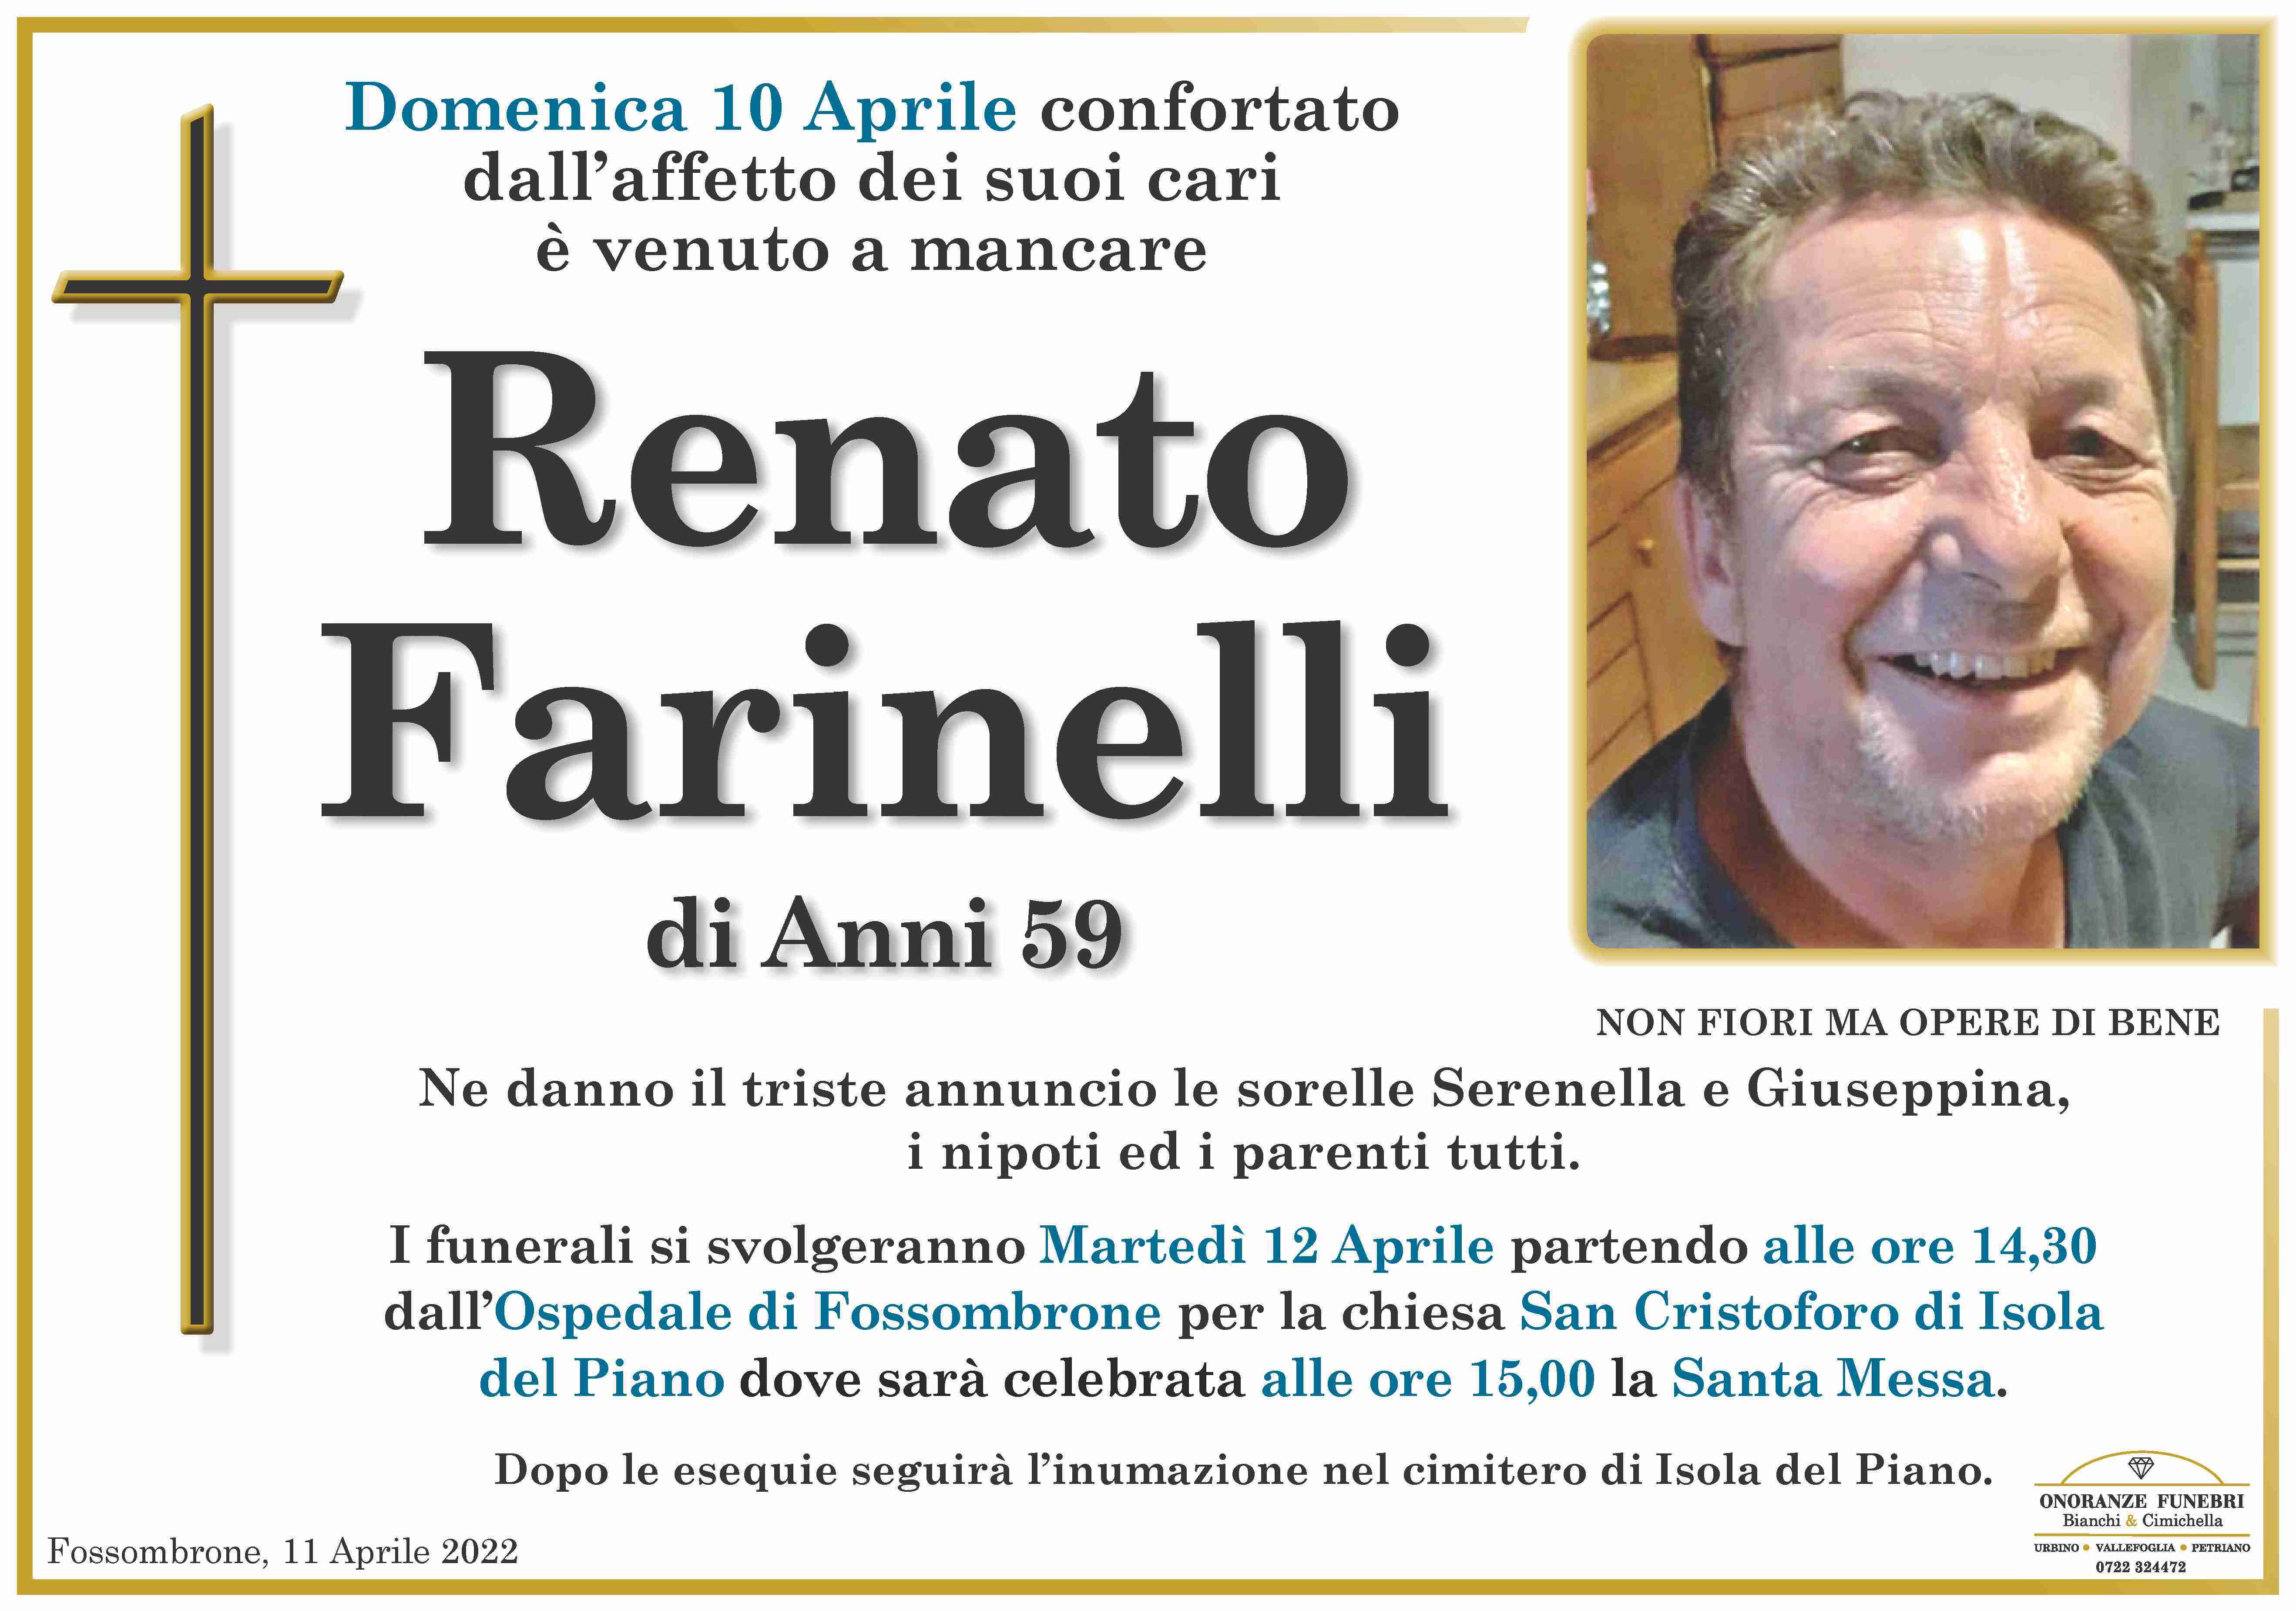 Renato Farinelli